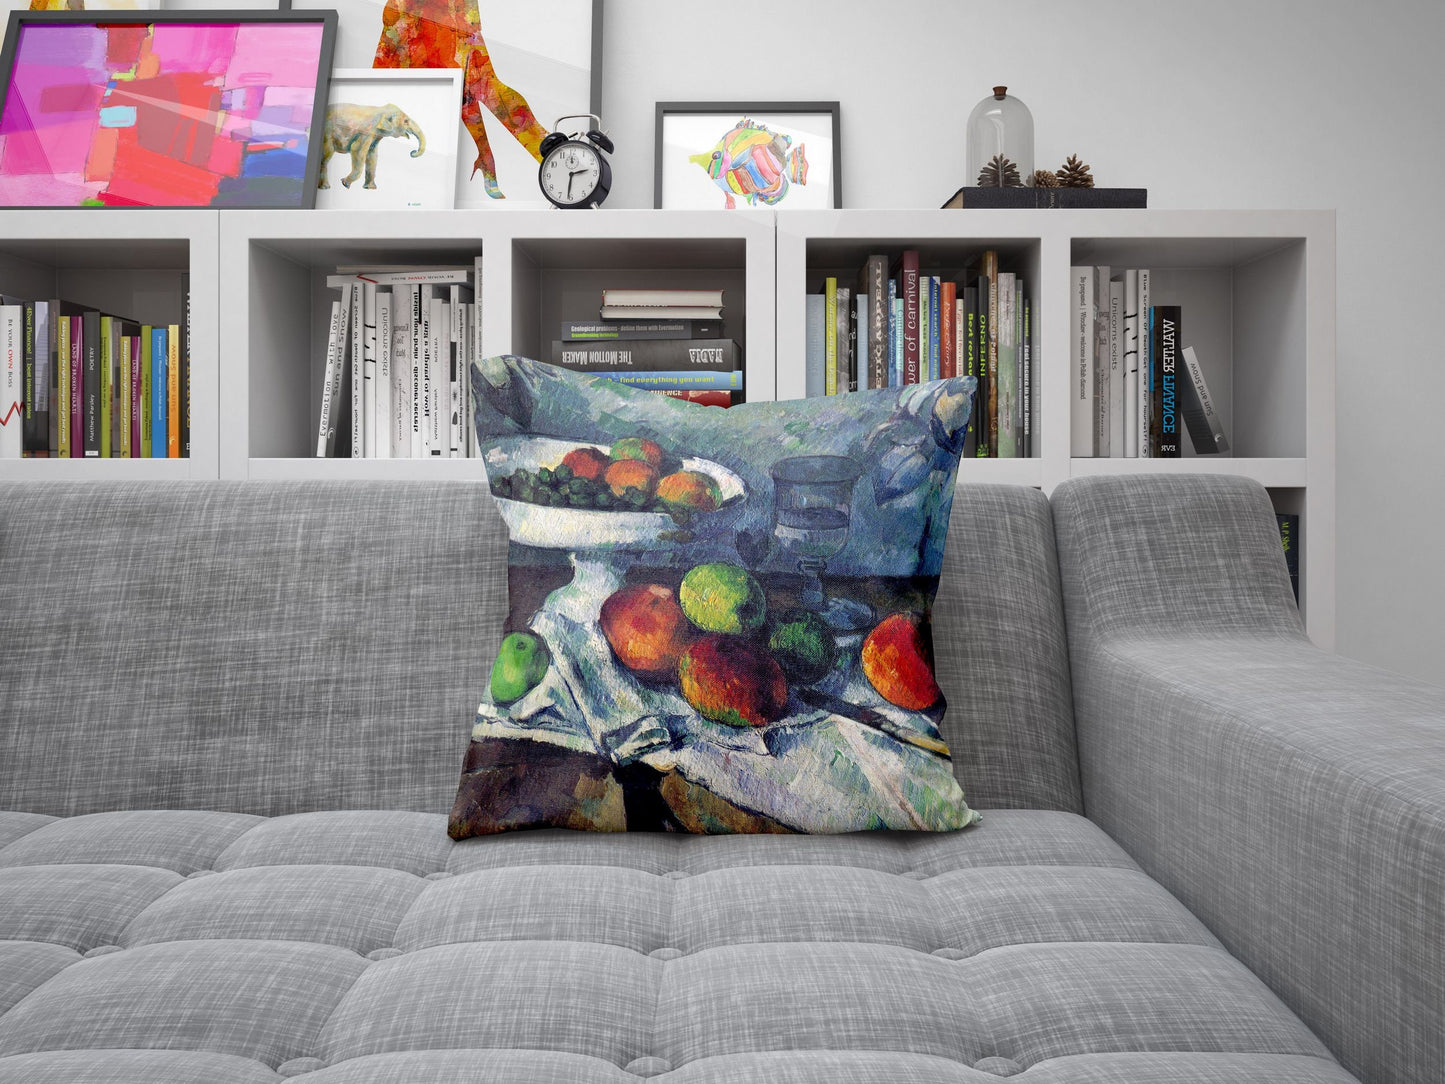 Paul Cezanne Famous Art, Decorative Pillow, Abstract Pillow, Art Pillow, Red And Blue, Modern Pillow, 22X22 Pillow Cover, Home Decor Pillow